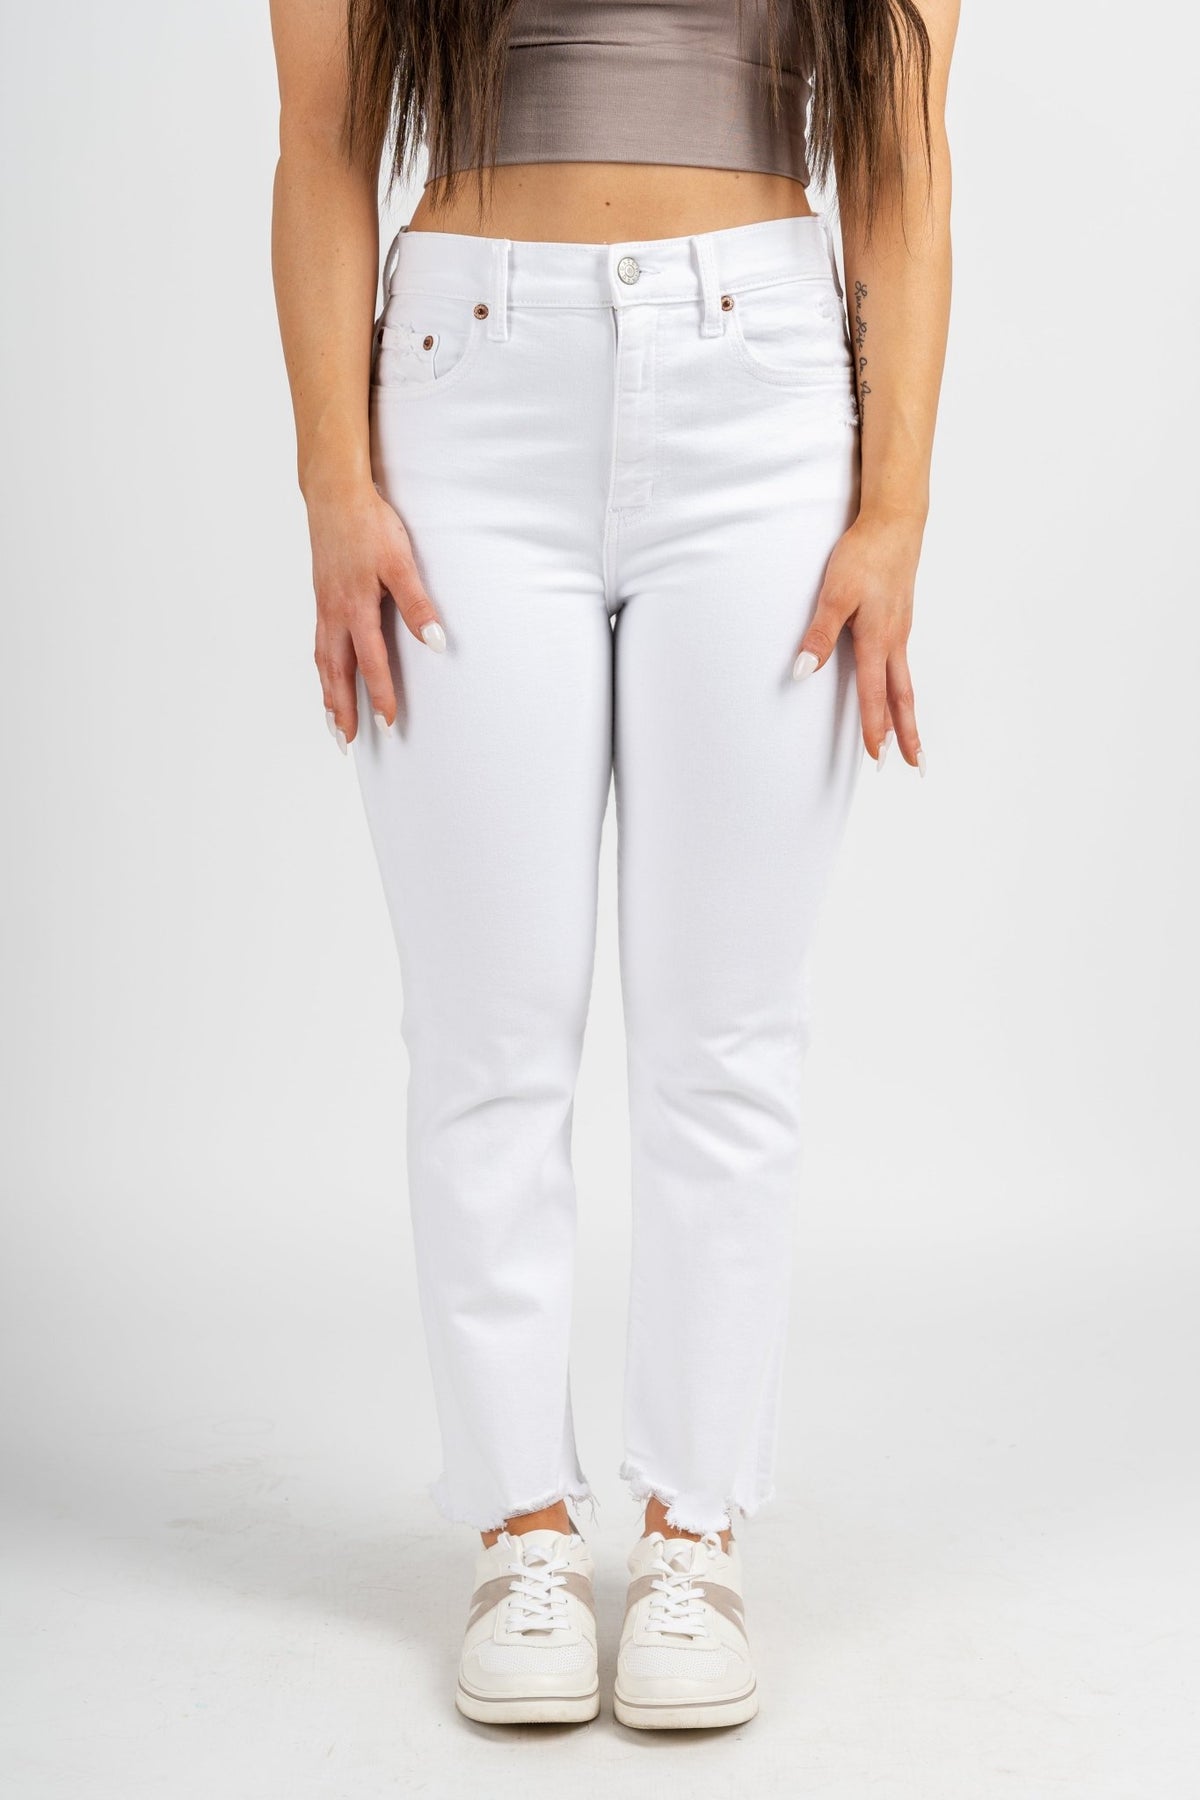 Daze denim high rise crop flare jeans white lightening | Lush Fashion Lounge: boutique women's jeans, fashion jeans for women, affordable fashion jeans, cute boutique jeans